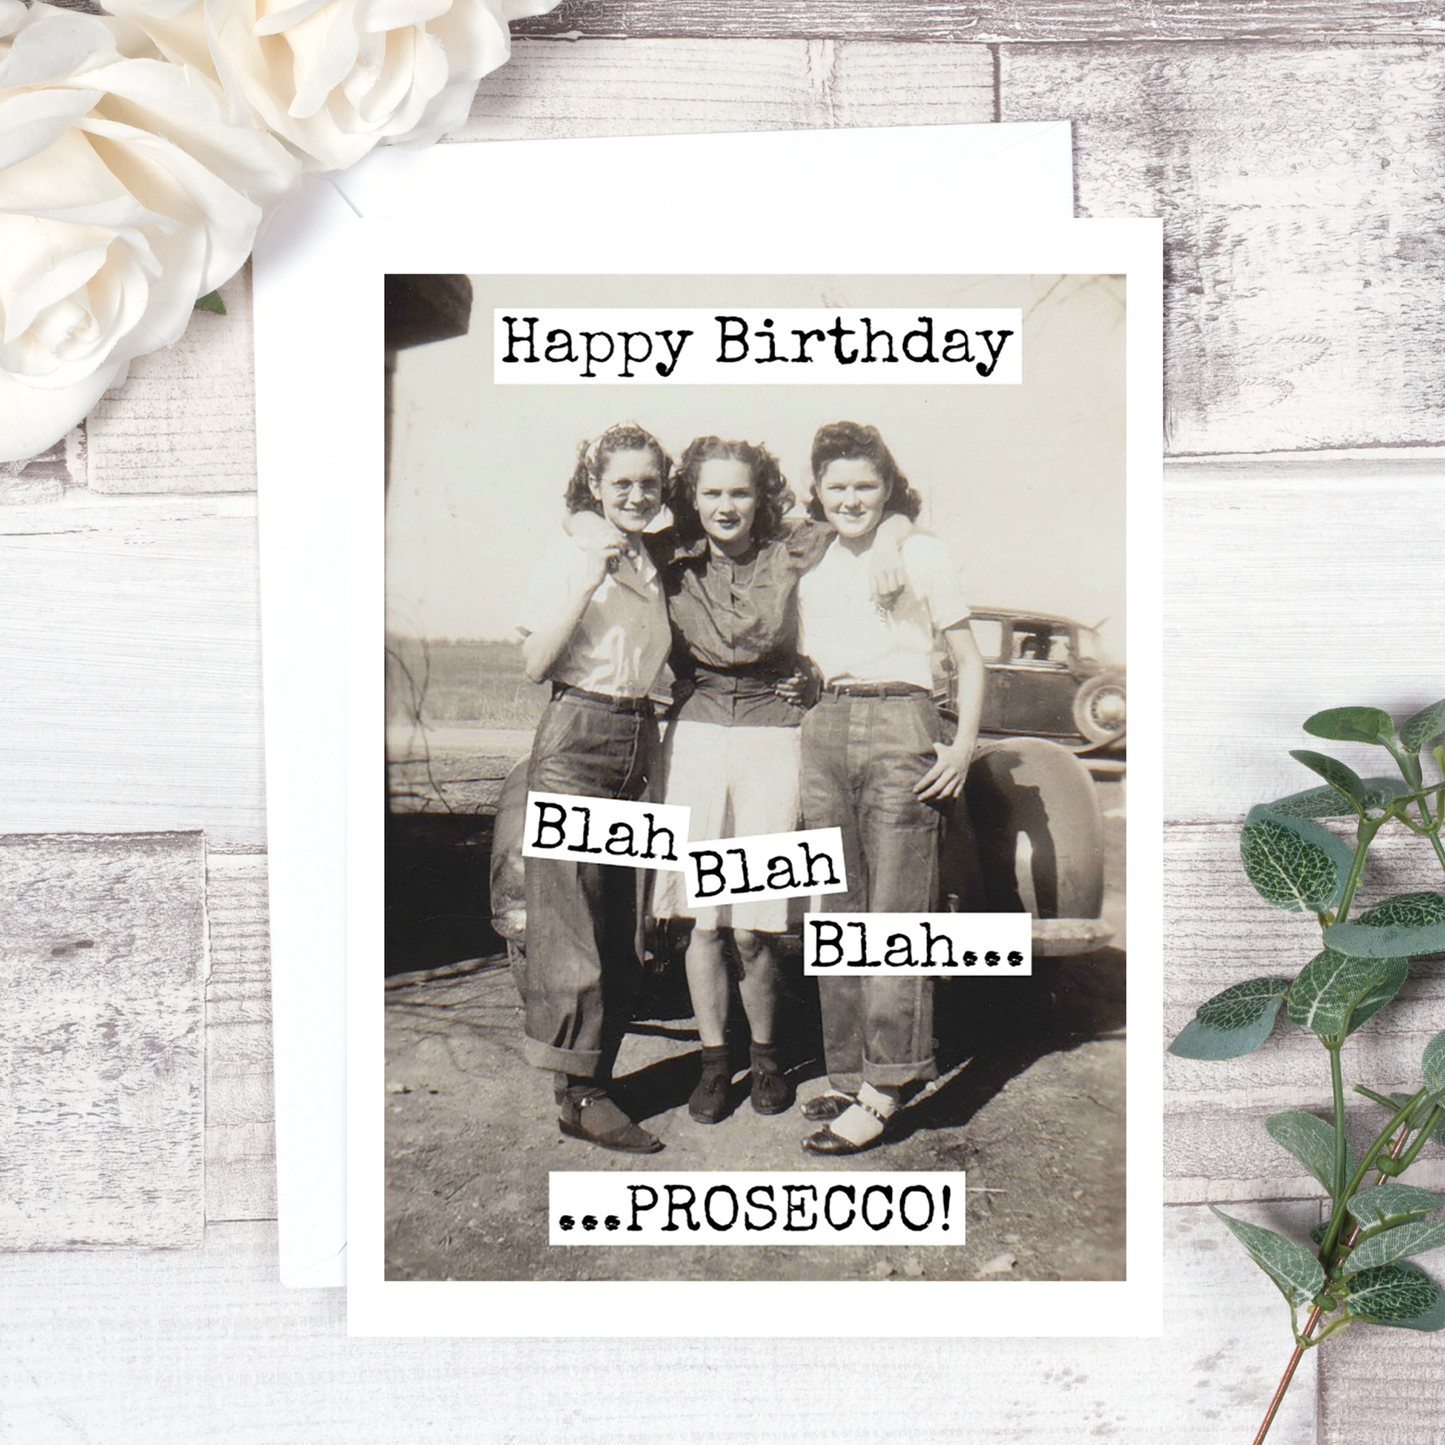 Raven's Rest Studio - Happy Birthday! Blah Blah Blah Prosecco! Birthday Card. 502